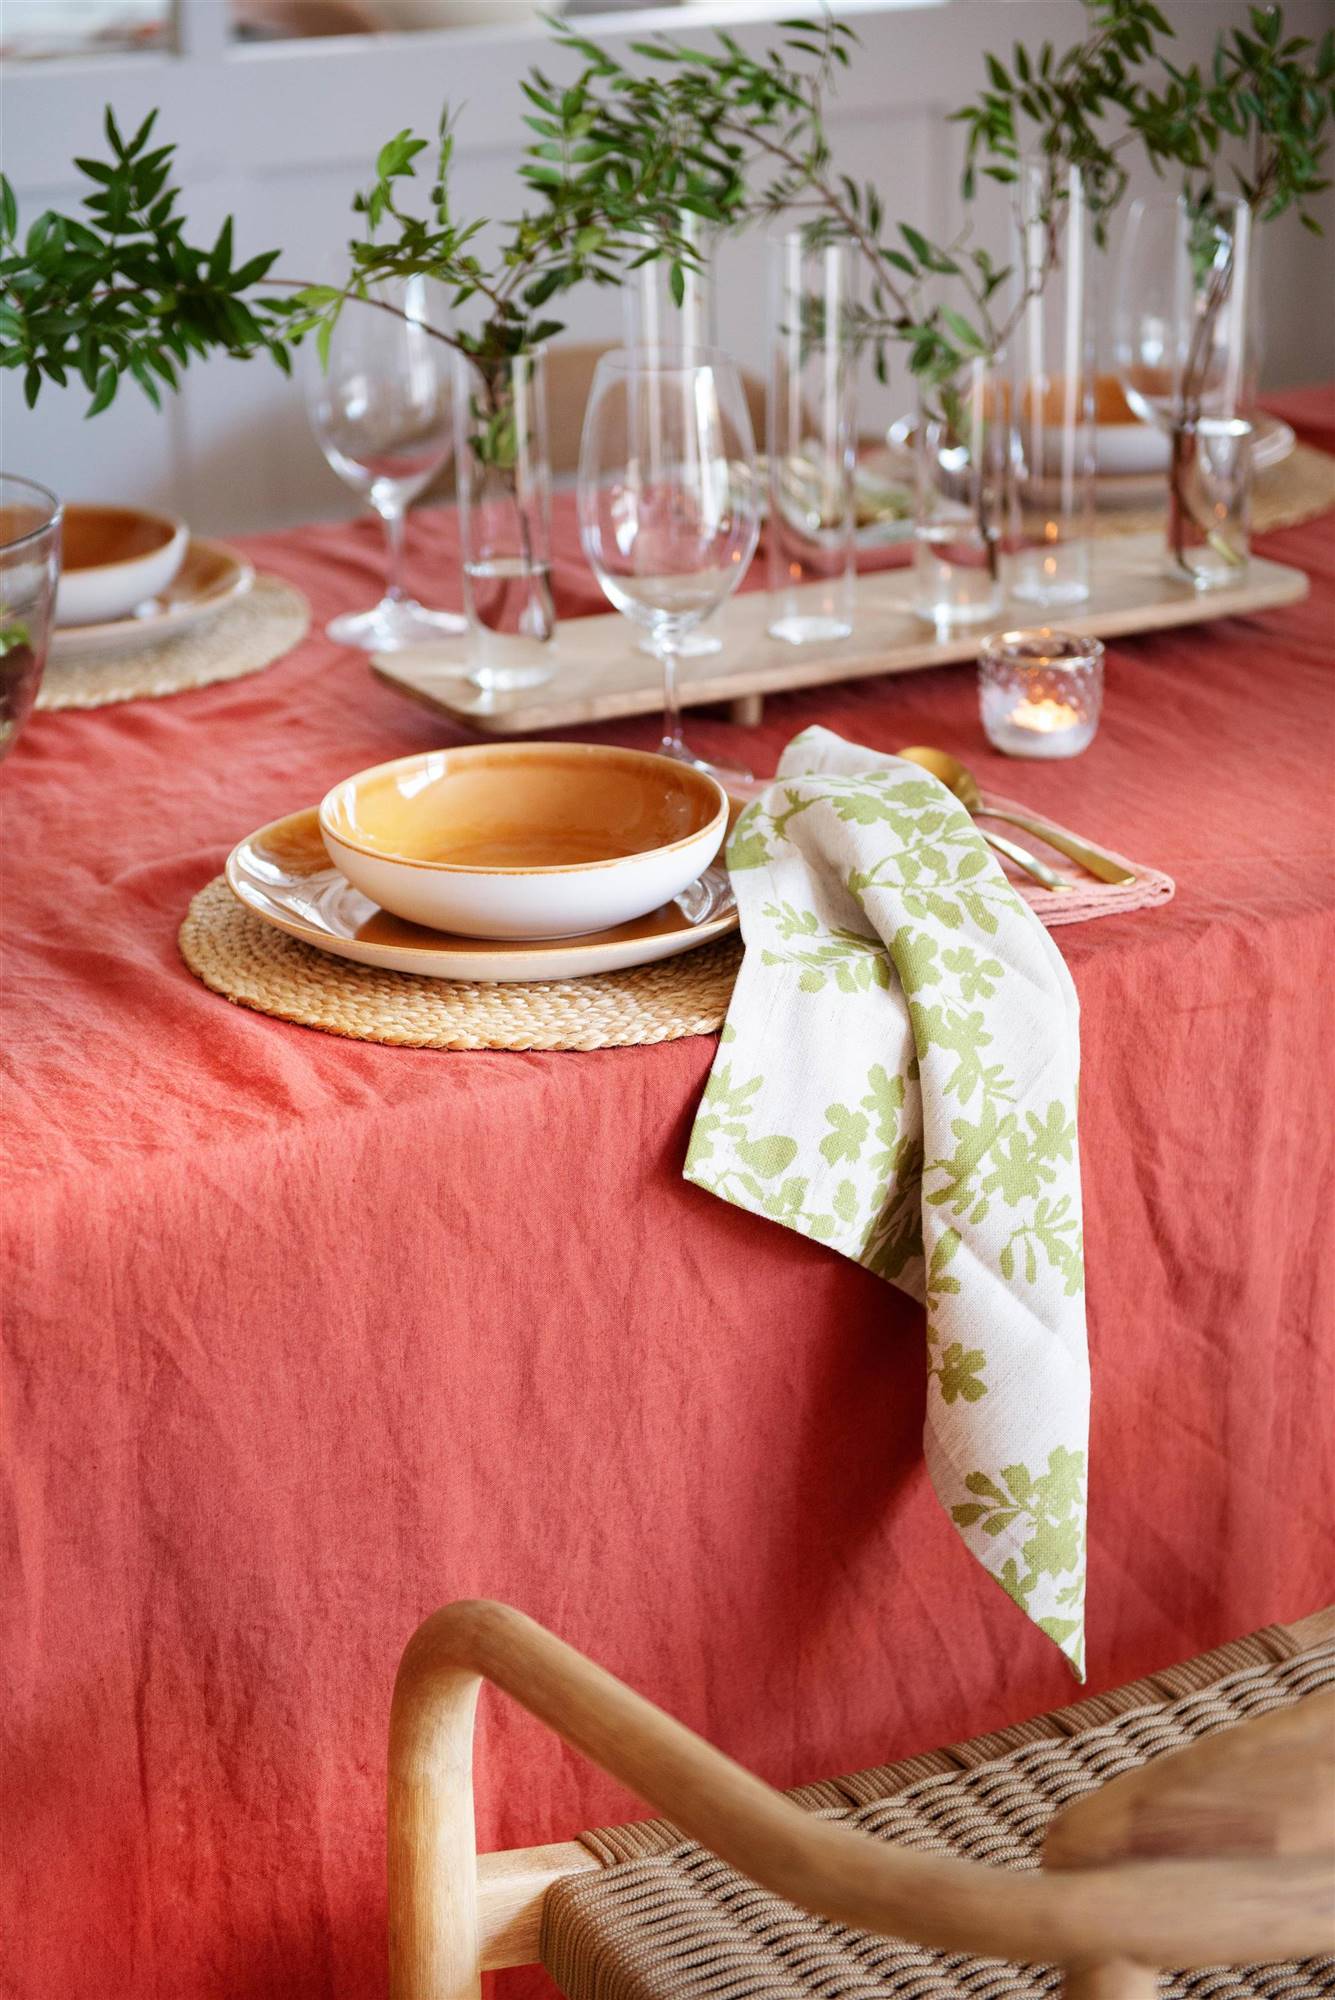 Mantel de lino en color rojizo y vajilla en tonos tierra para vestir la mesa de comedor.